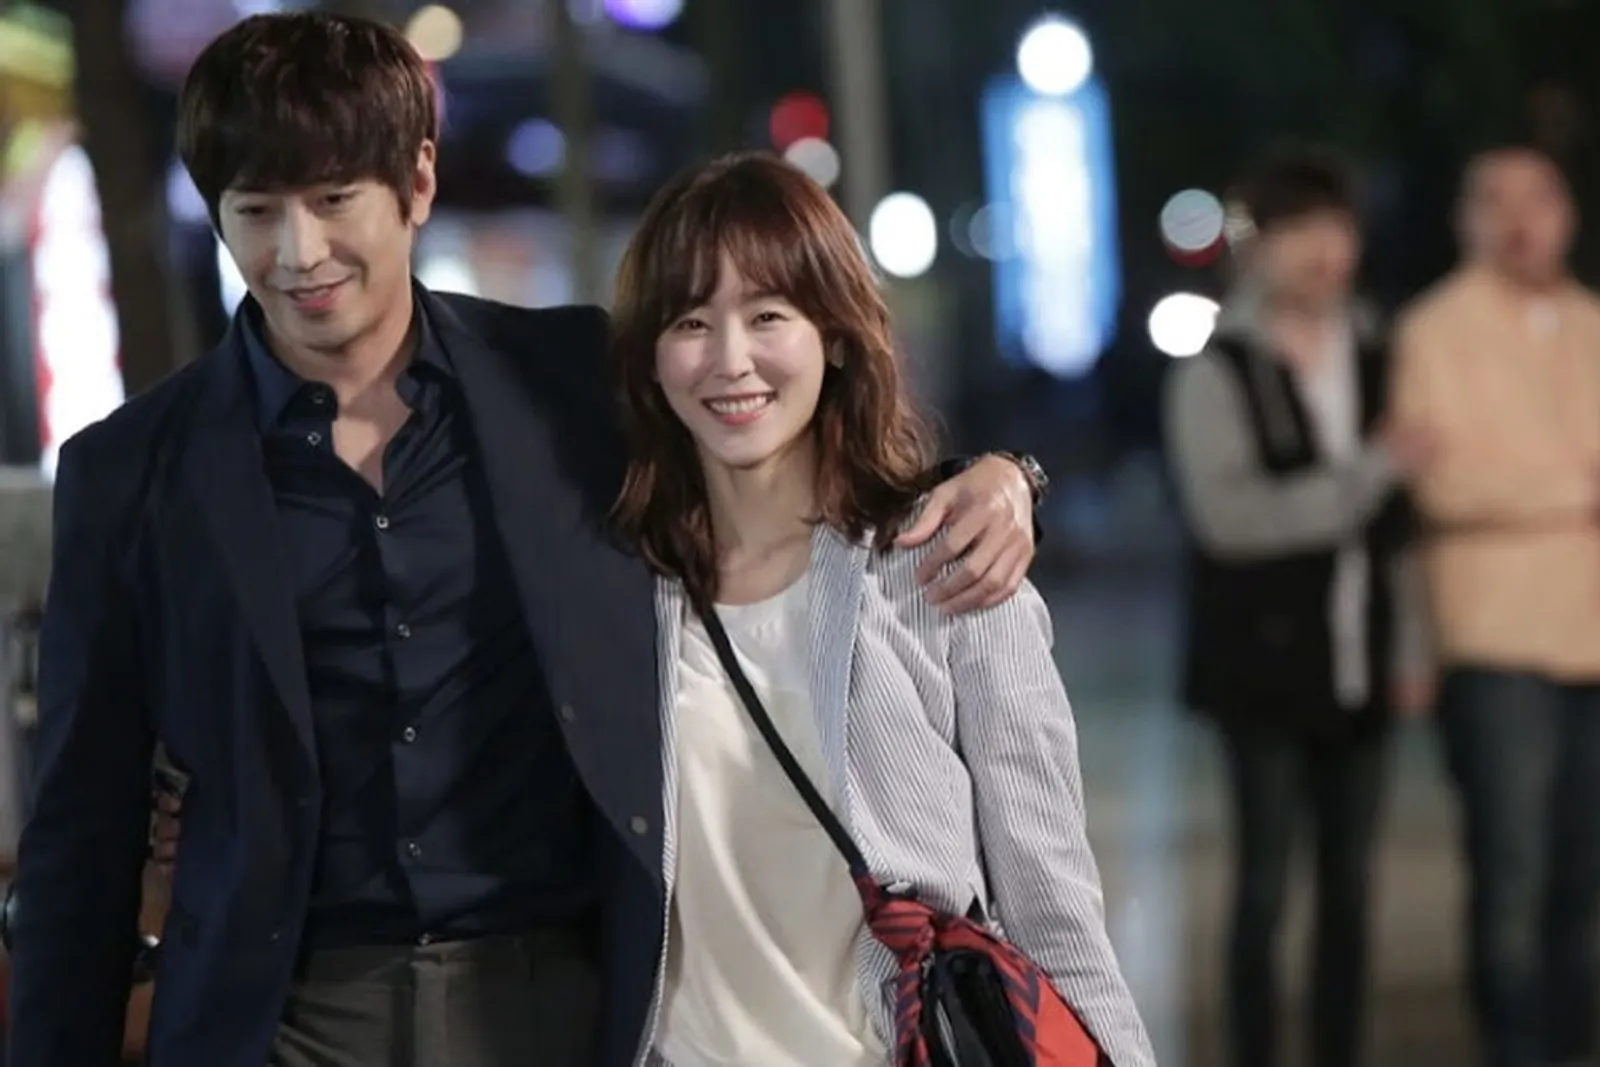 Diperankan oleh Idol, 6 Pasangan K-Drama Ini Sukses Bikin Baper